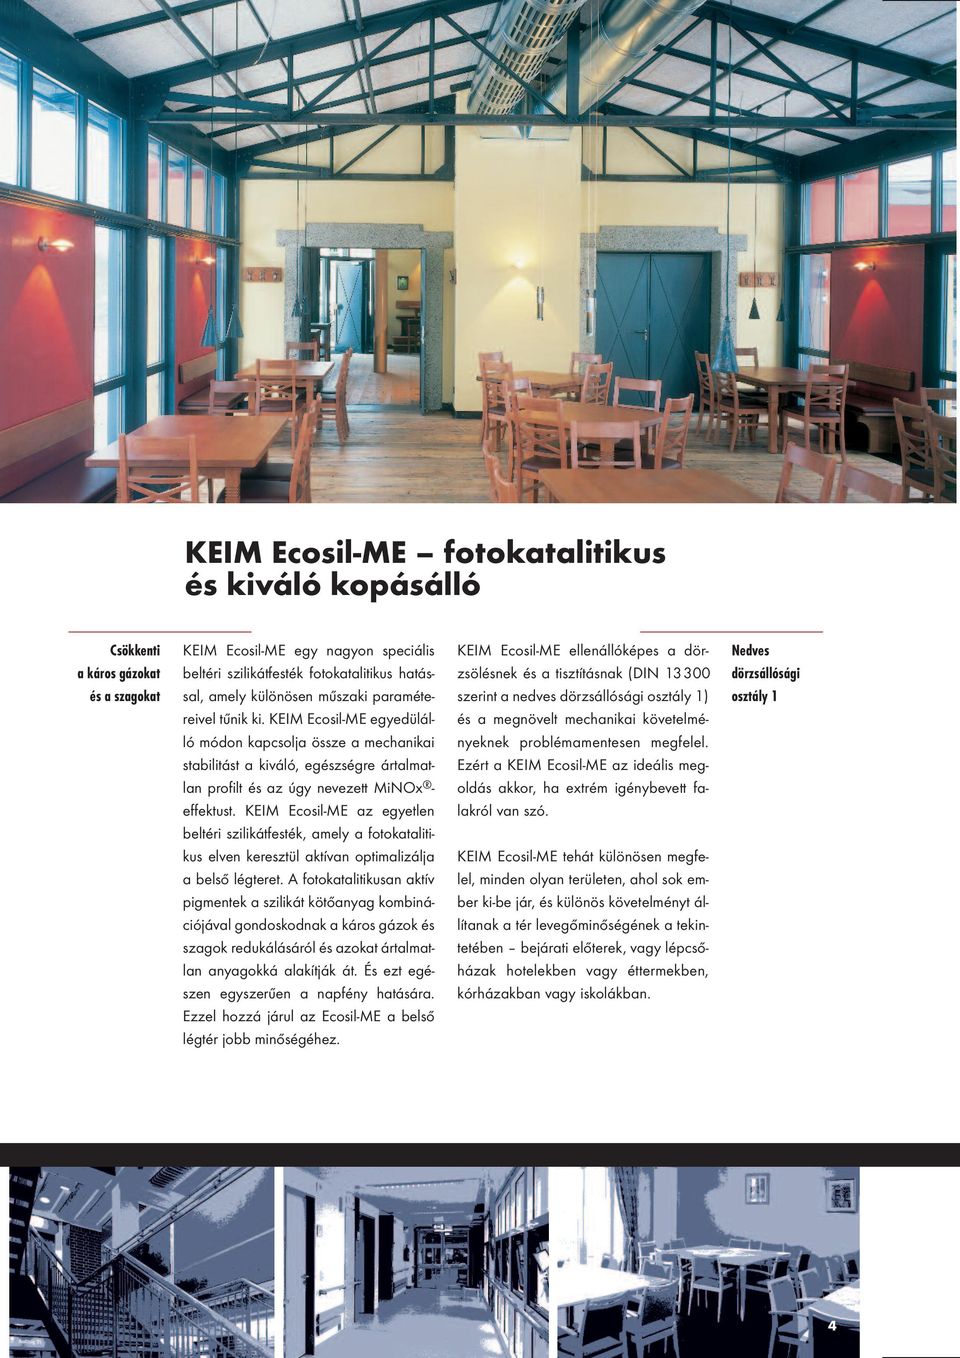 KEIM Ecosil-ME az egyetlen beltéri szilikátfesték, amely a fotokatalitikus elven keresztül aktívan optimalizálja a belső légteret.